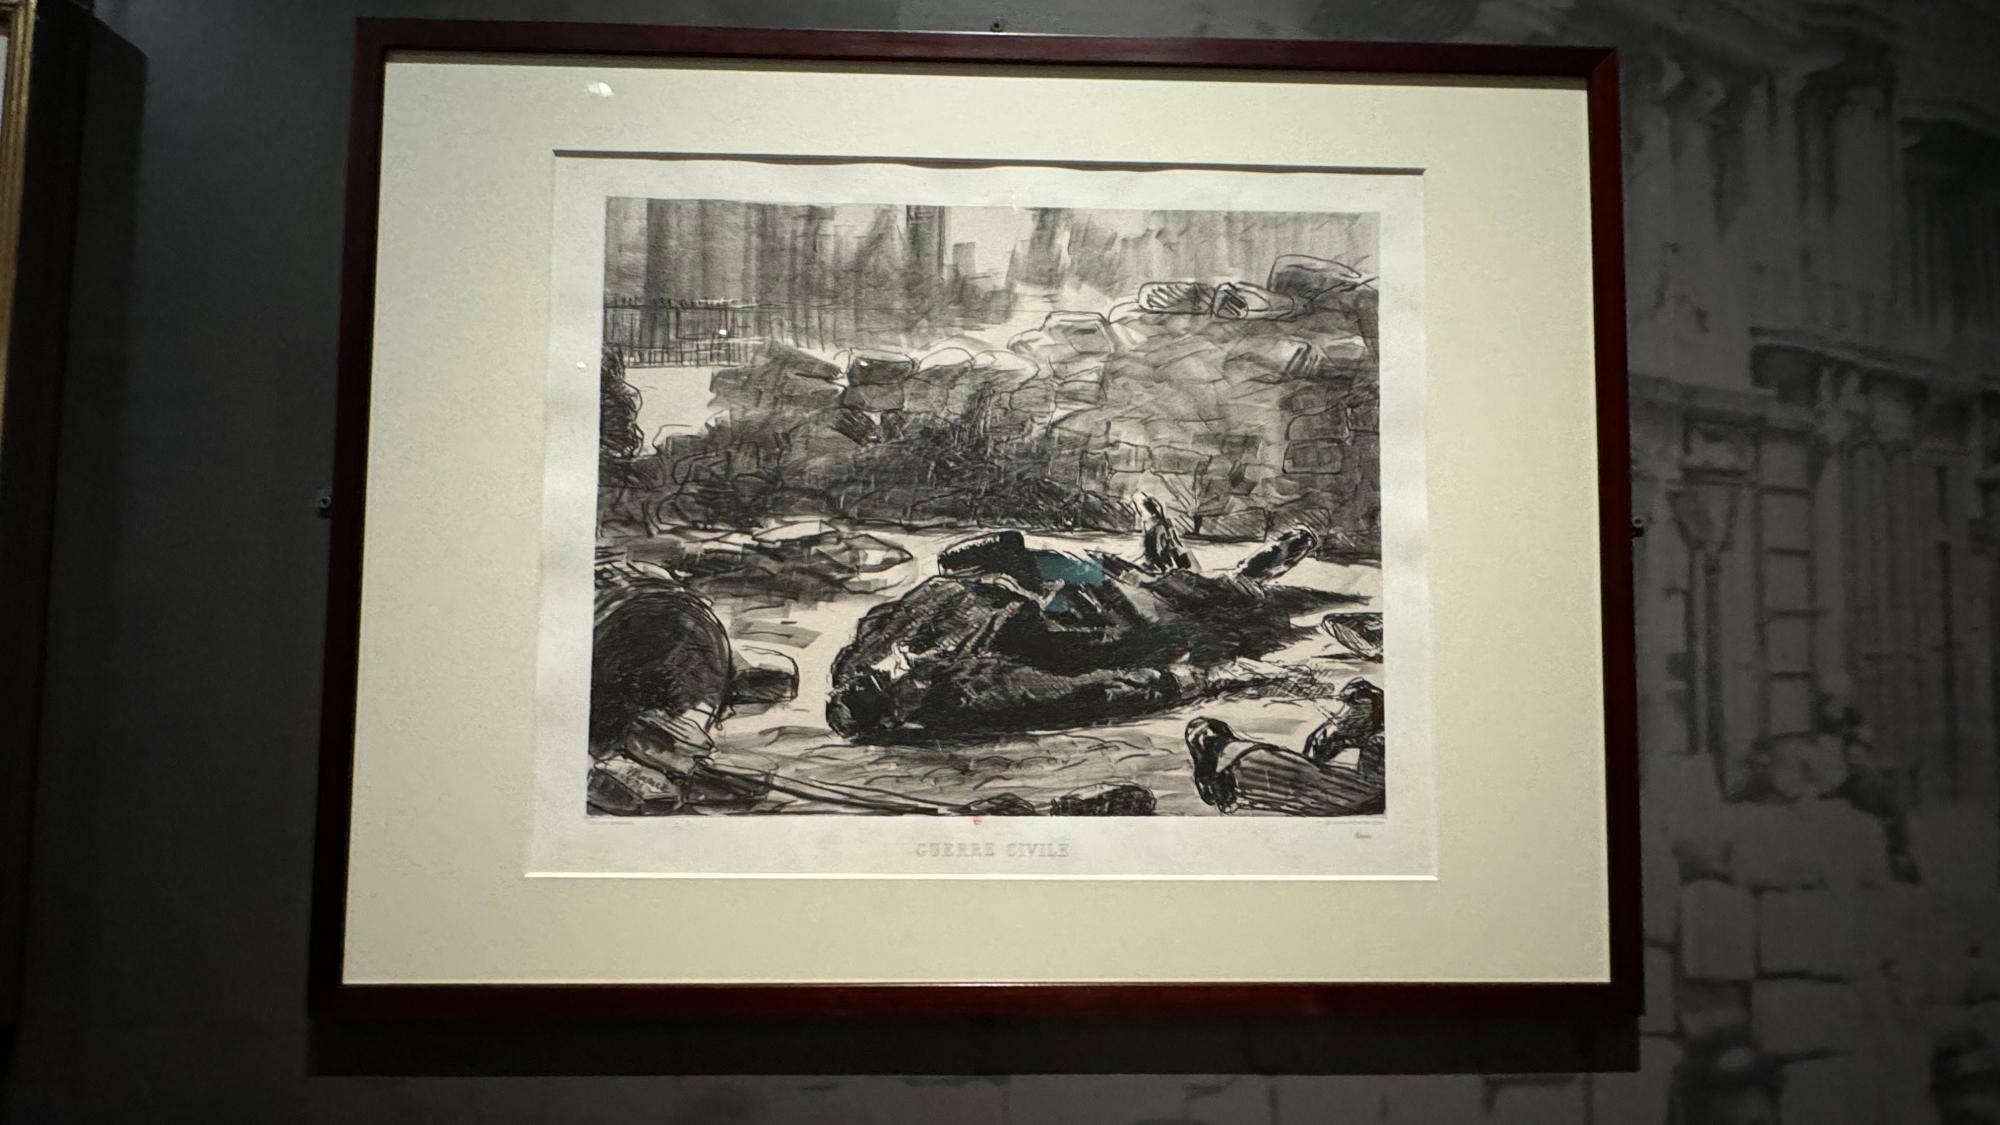 エドゥワール・マネのリトグラフ「市民戦争」（1871、フランス国立図書館所蔵）